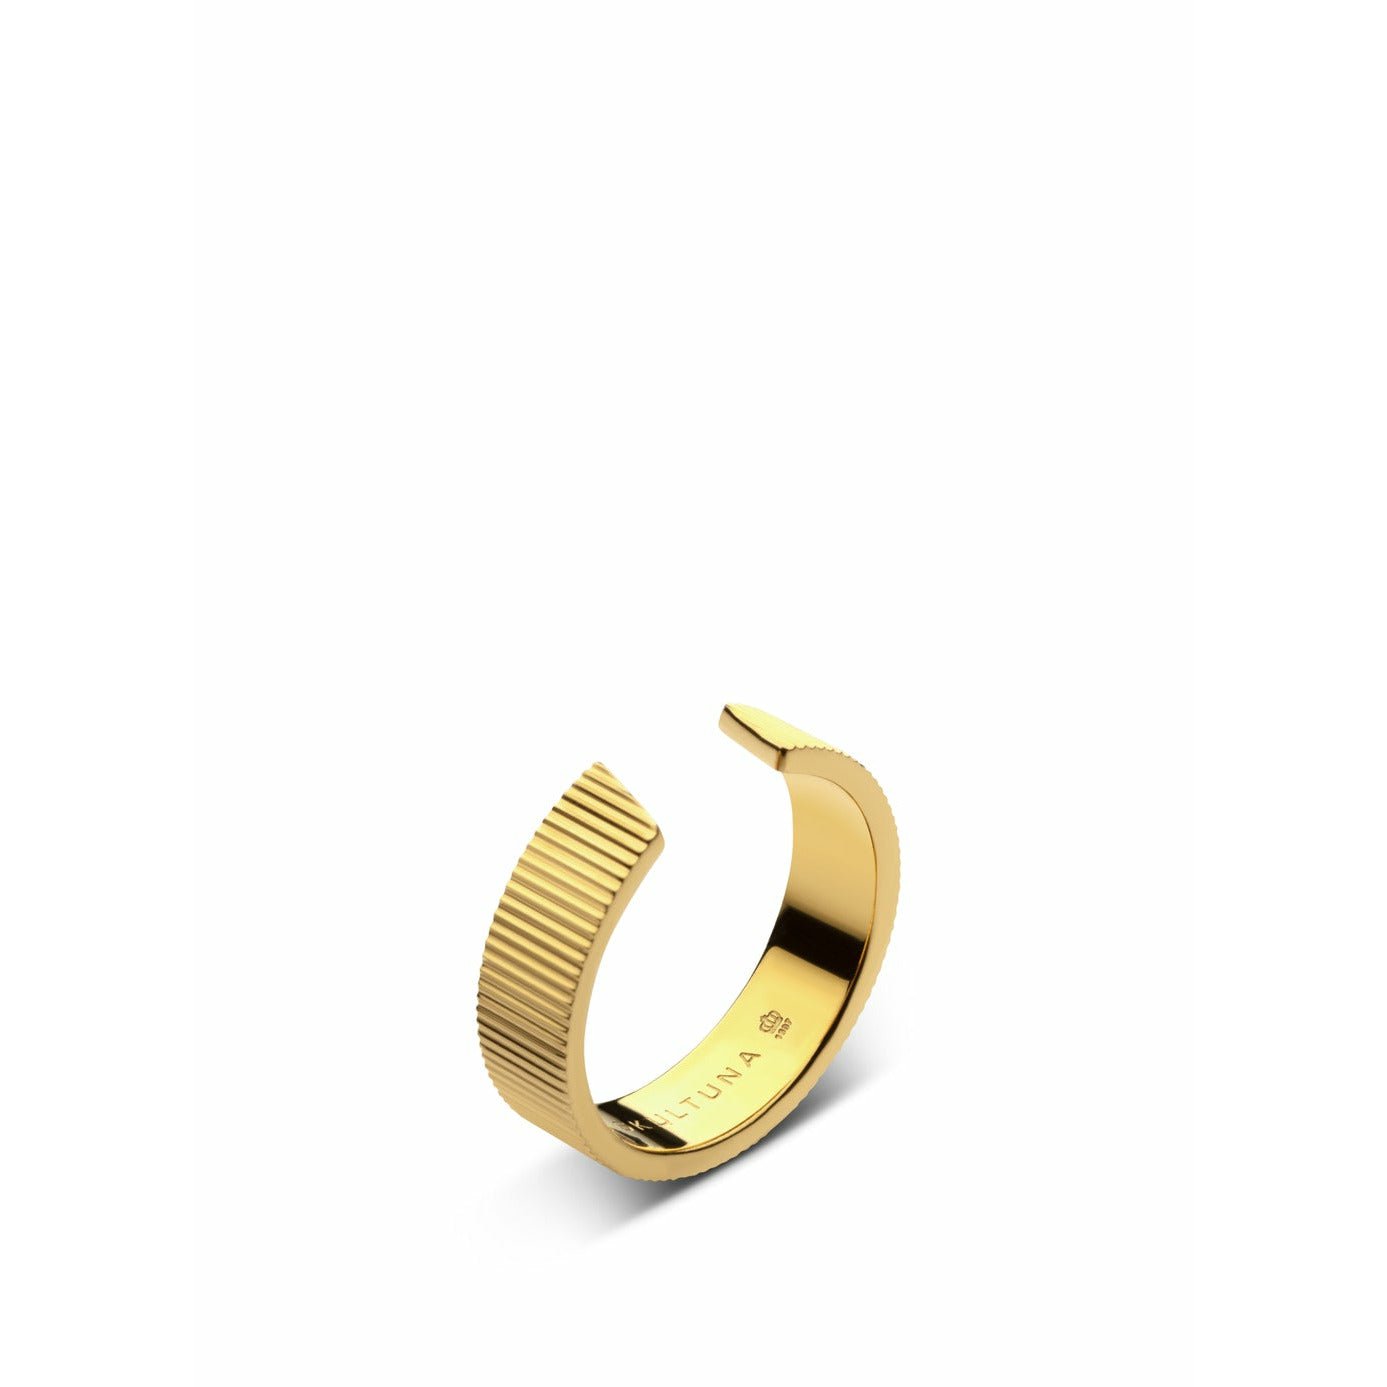 Skultuna gerippter Ring breit klein 316 l Stahl Gold plattiert, Ø1,6 cm